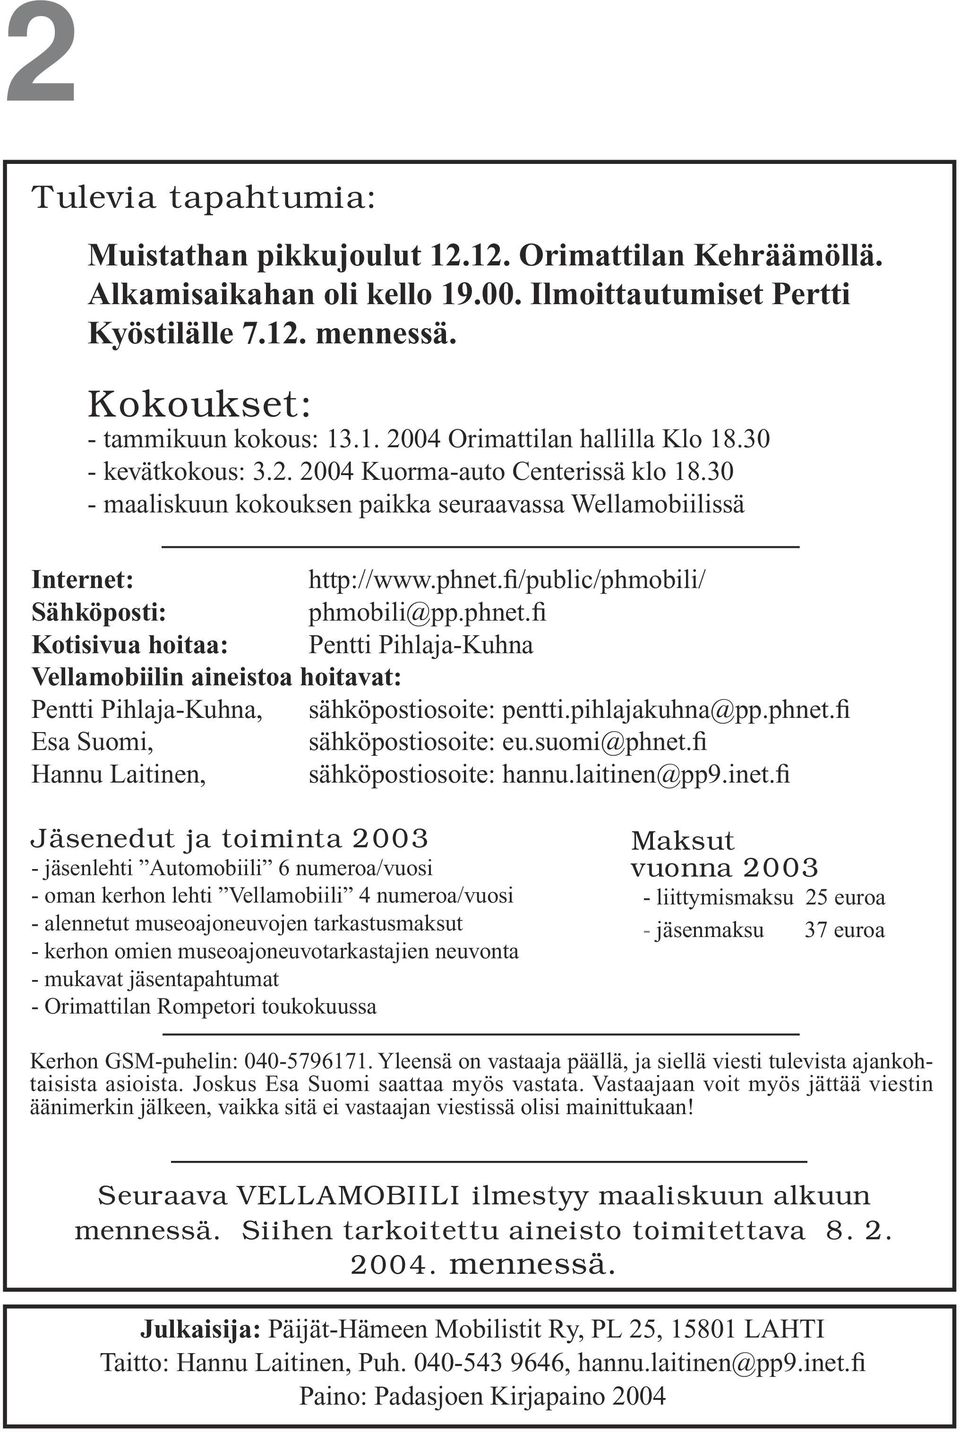 fi/public/phmobili/ Sähköposti: phmobili@pp.phnet.fi Kotisivua hoitaa: Pentti Pihlaja-Kuhna Vellamobiilin aineistoa hoitavat: Pentti Pihlaja-Kuhna, sähköpostiosoite: pentti.pihlajakuhna@pp.phnet.fi Esa Suomi, sähköpostiosoite: eu.